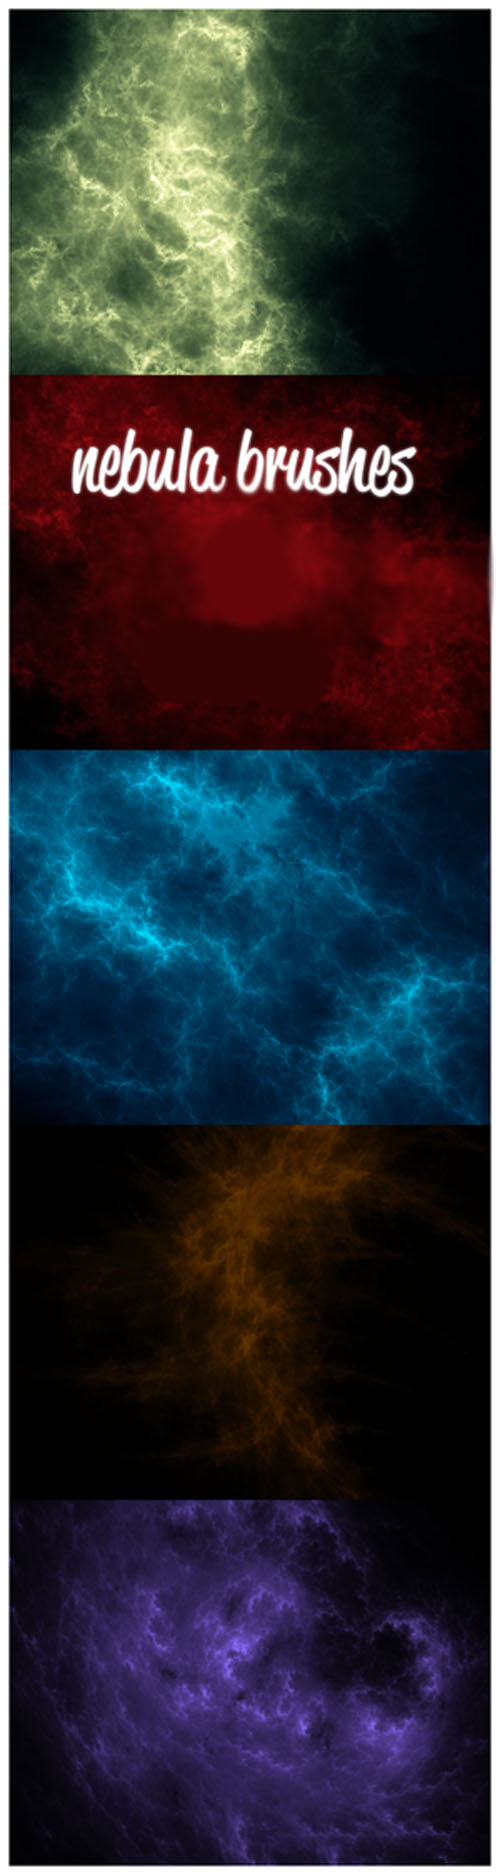 Nebula Brushes Set for Photoshop